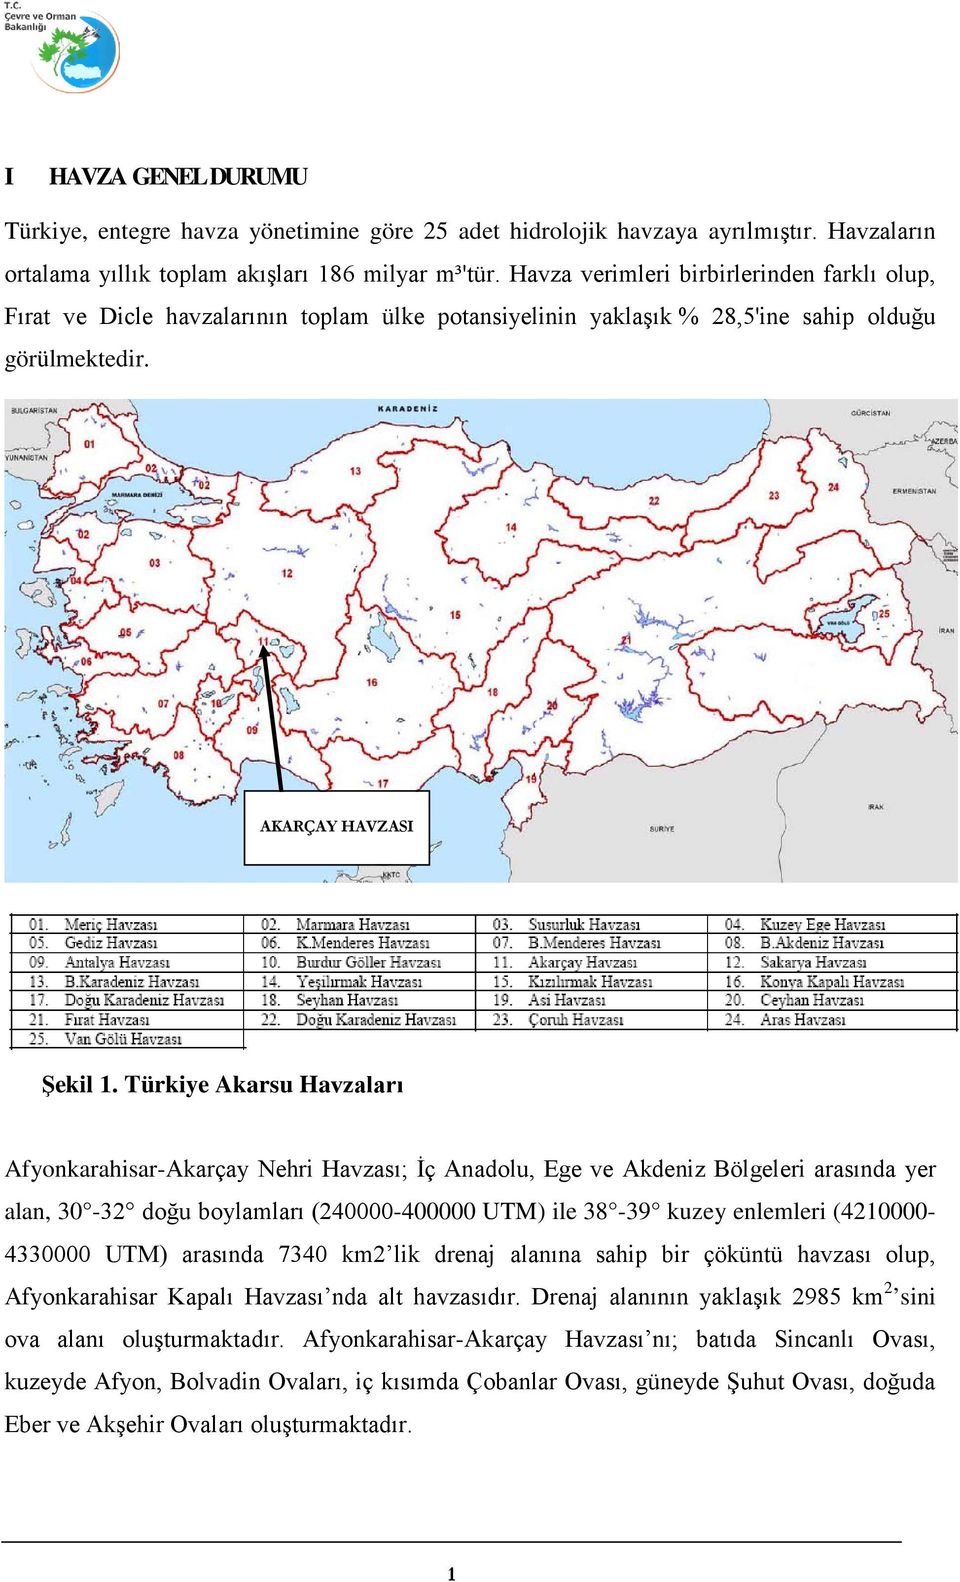 Türkiye Akarsu Havzaları Afyonkarahisar-Akarçay Nehri Havzası; İç Anadolu, Ege ve Akdeniz Bölgeleri arasında yer alan, 30-32 doğu boylamları (240000-400000 UTM) ile 38-39 kuzey enlemleri